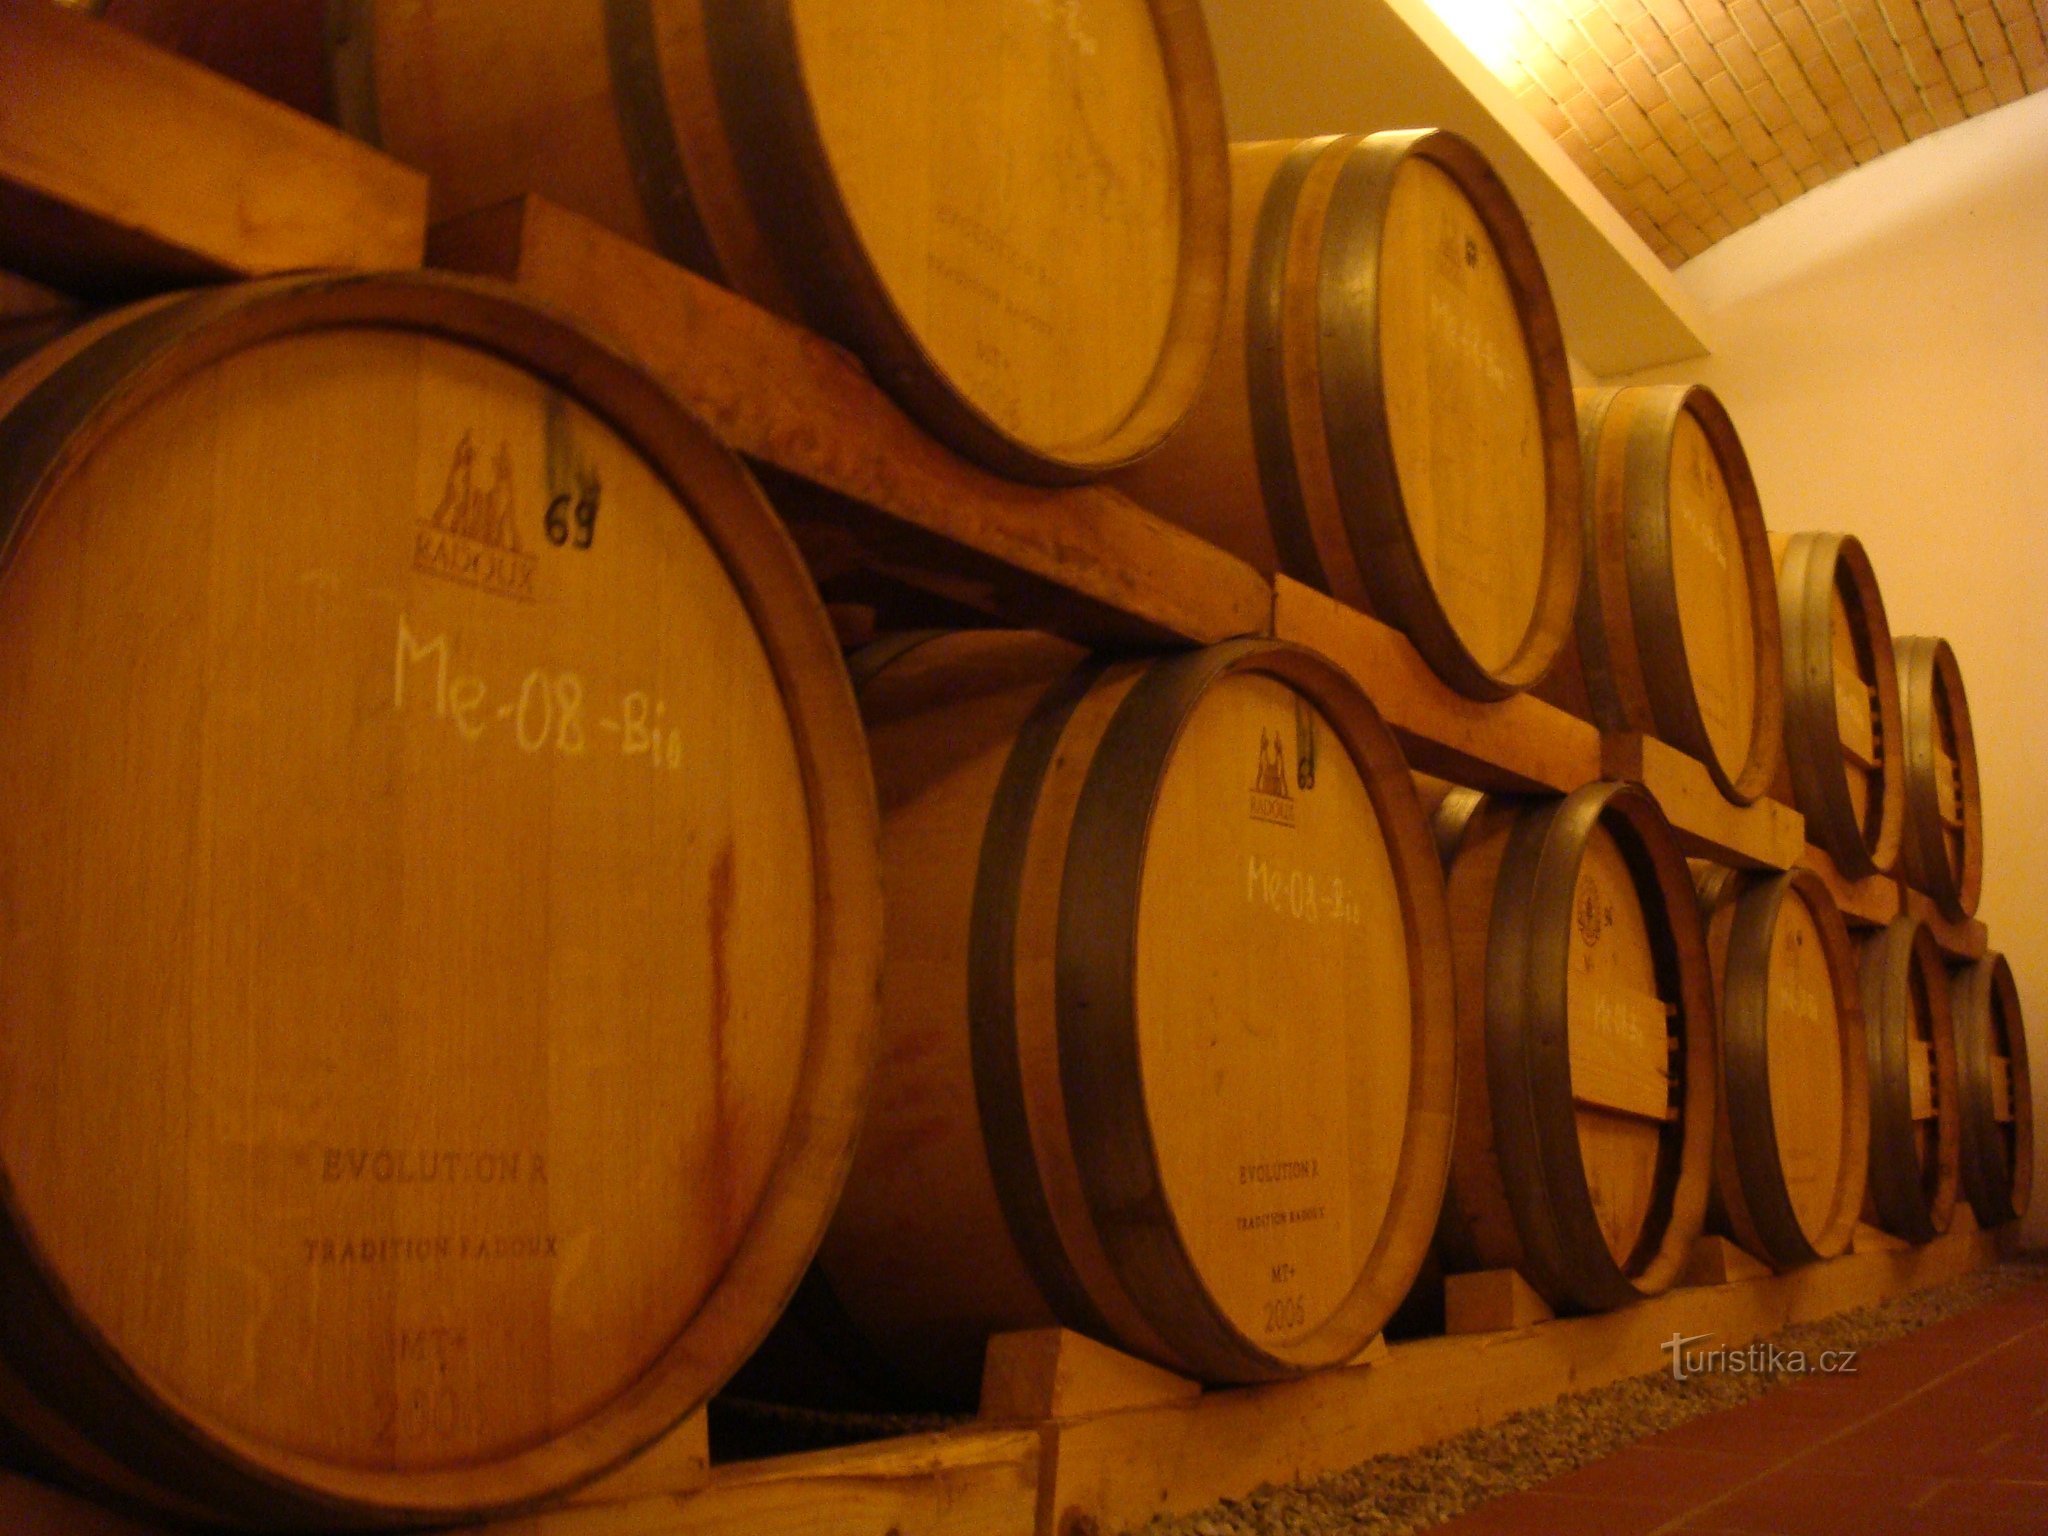 Šamšula vingård